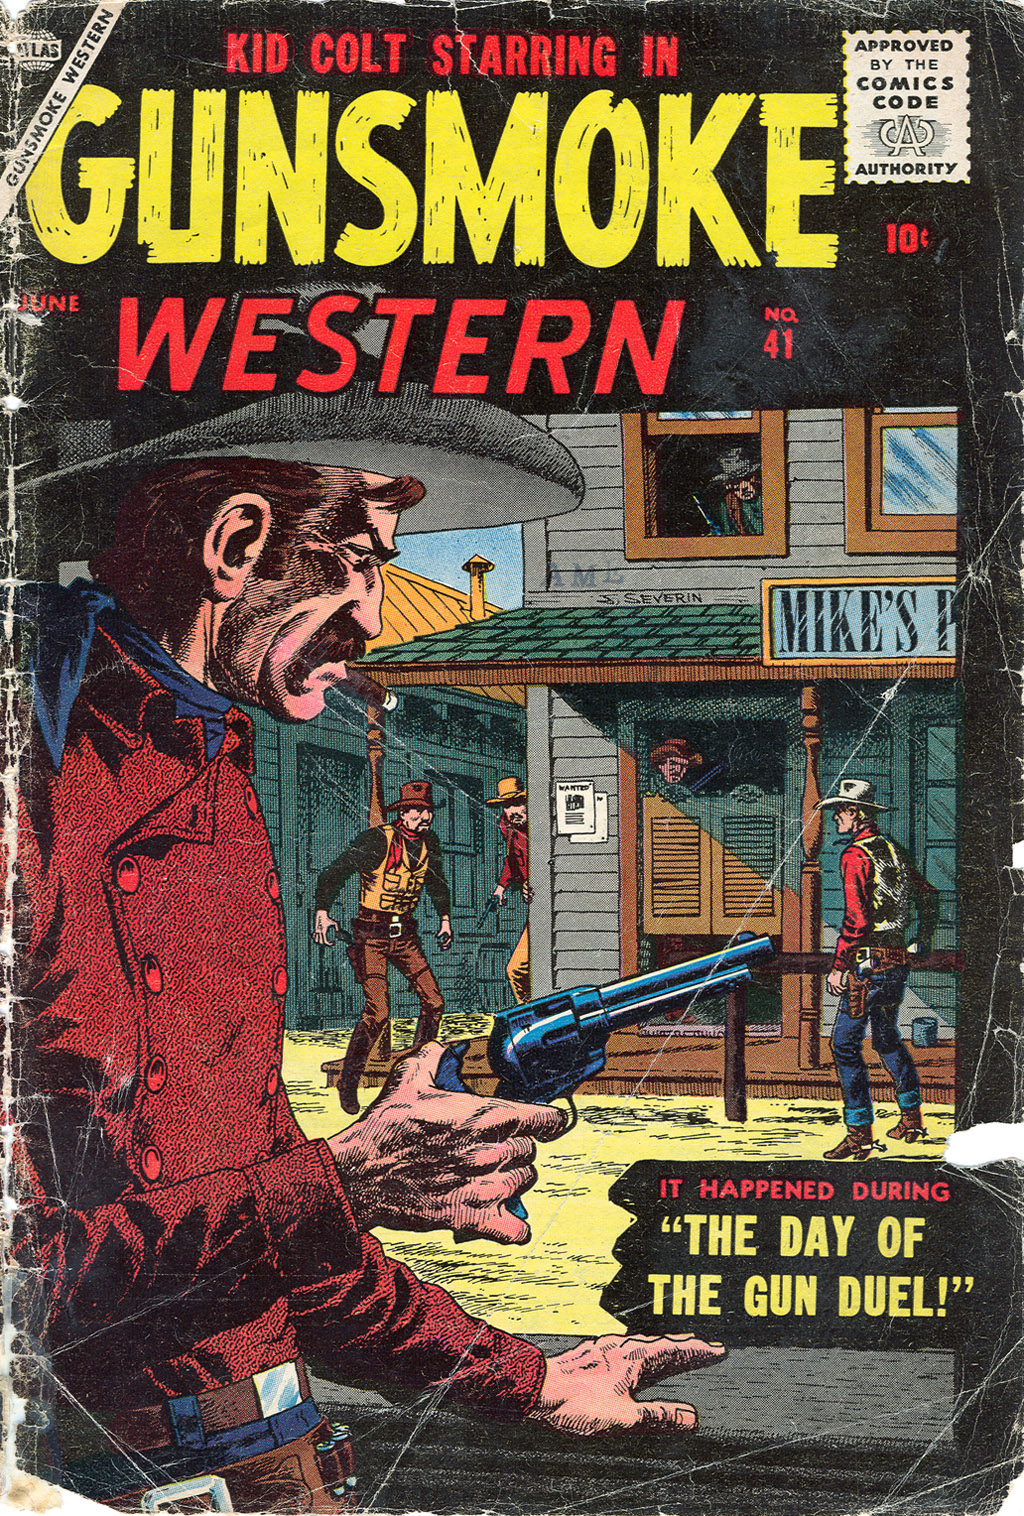 Read online Gunsmoke Western comic -  Issue #41 - 1